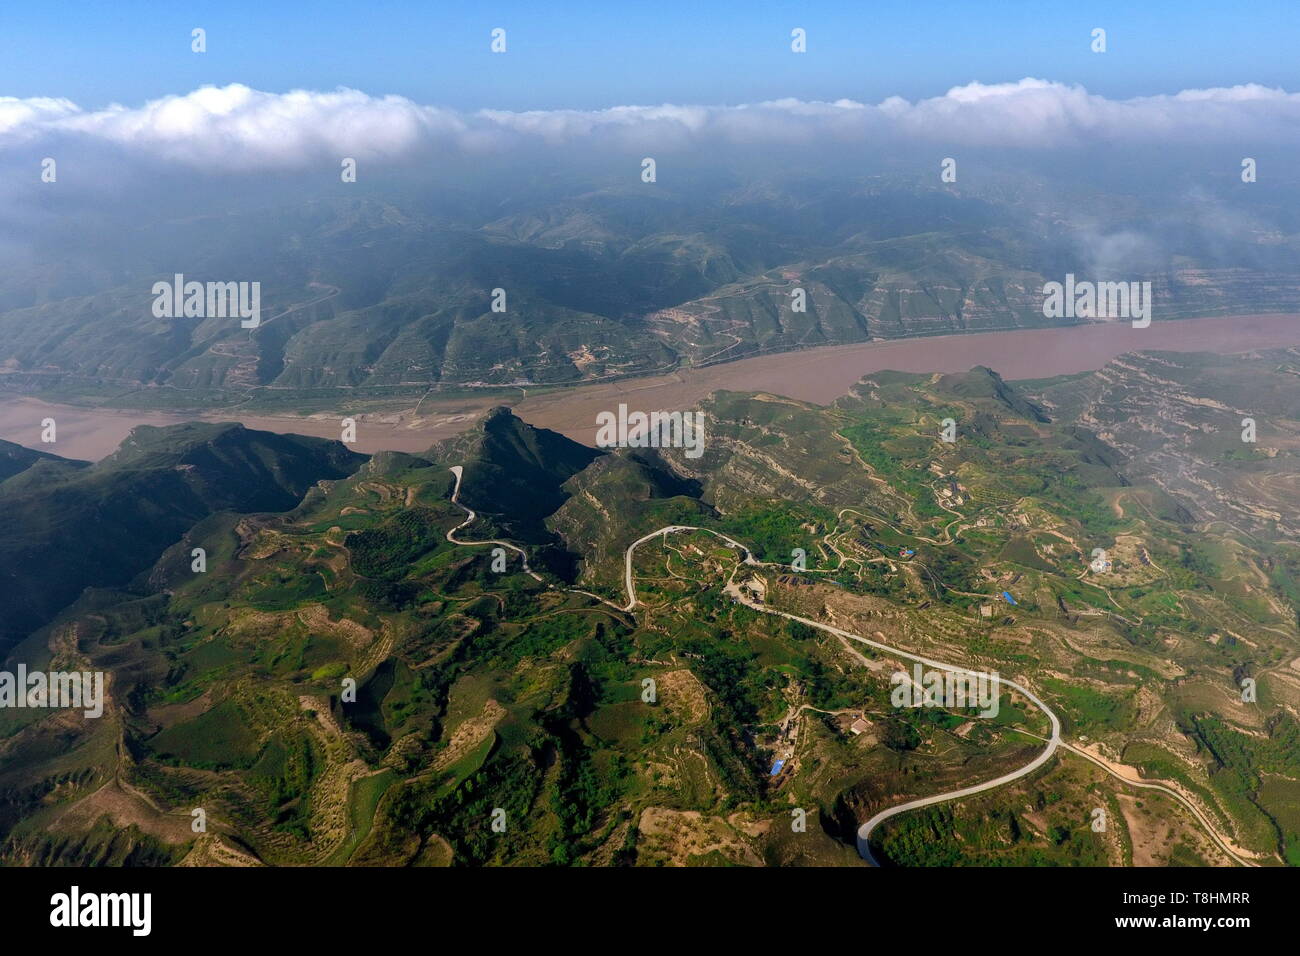 (190513) -- Pechino, 13 maggio 2019 (Xinhua) -- foto aerea adottate il 7 settembre 6, 2017 mostra il paesaggio del Fiume Giallo in Yonghe County, a nord della Cina di nella provincia di Shanxi. Il 'Giorno hanxi 'tema evento tenutosi come parte del Beijing International mostra ortoculturale calci fuori a Pechino il 12 maggio. Il giardino dello Shanxi mette in mostra il suo impegno in greening e imboschimento come pure il suo concetto di sviluppo verde alla corso expo. Non è più fatto affidamento soprattutto sulla sua industria carboniera per la crescita, Shanxi è stata impegnata nello sviluppo di energia pulita e di altre industrie emergenti di trovare un equilibrio b Foto Stock